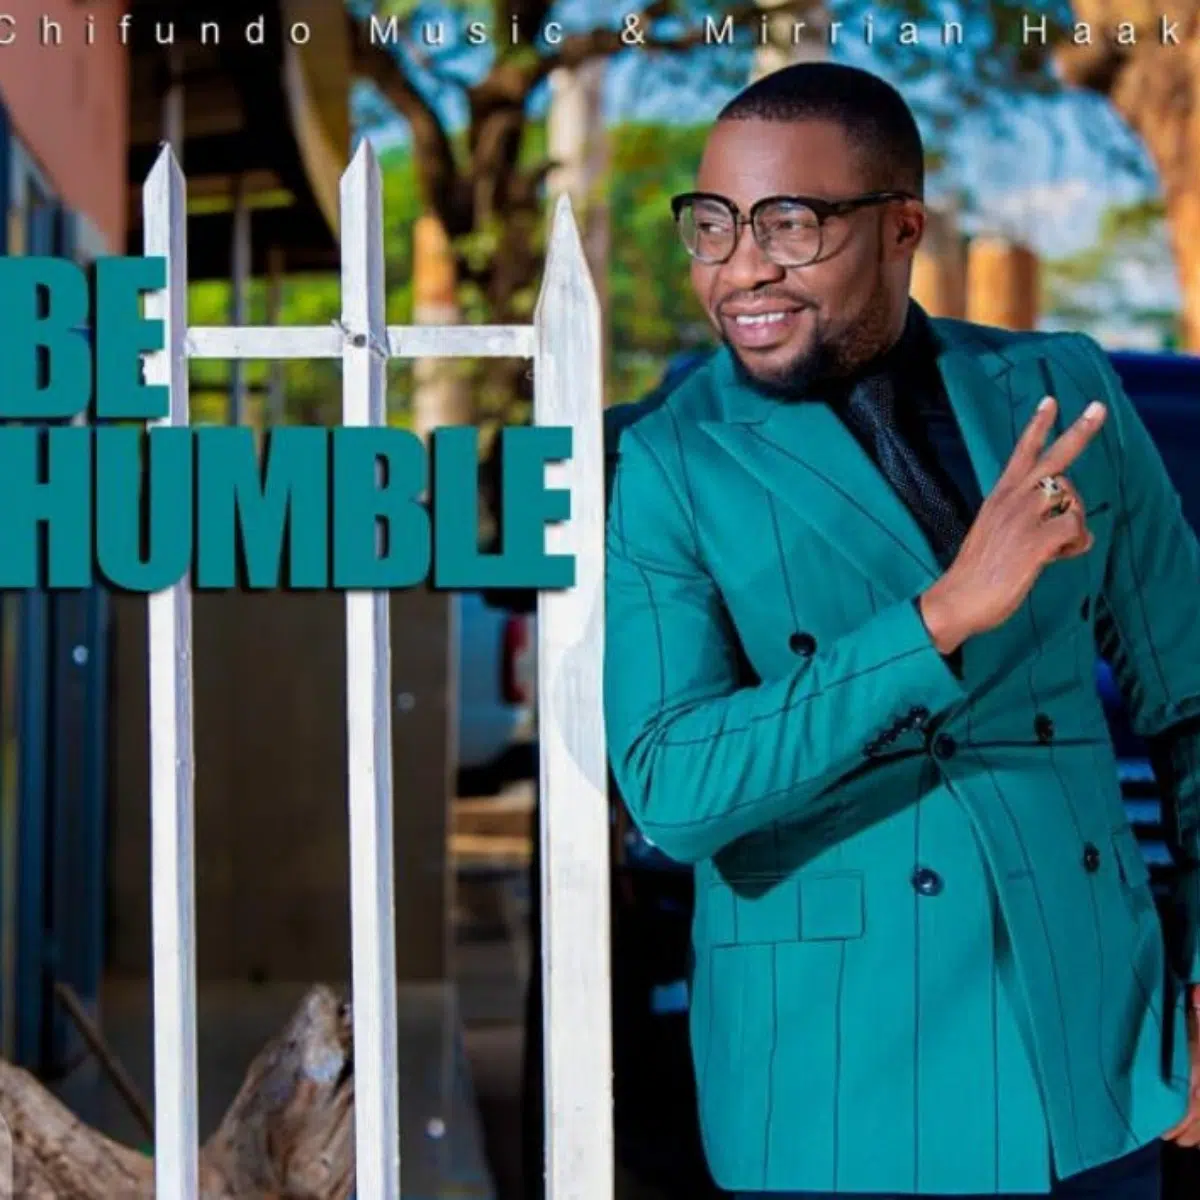 DOWNLOAD: Kings Malembe Malembe Ft Chifundo Music & Mirrian H – “Be Humble” Mp3